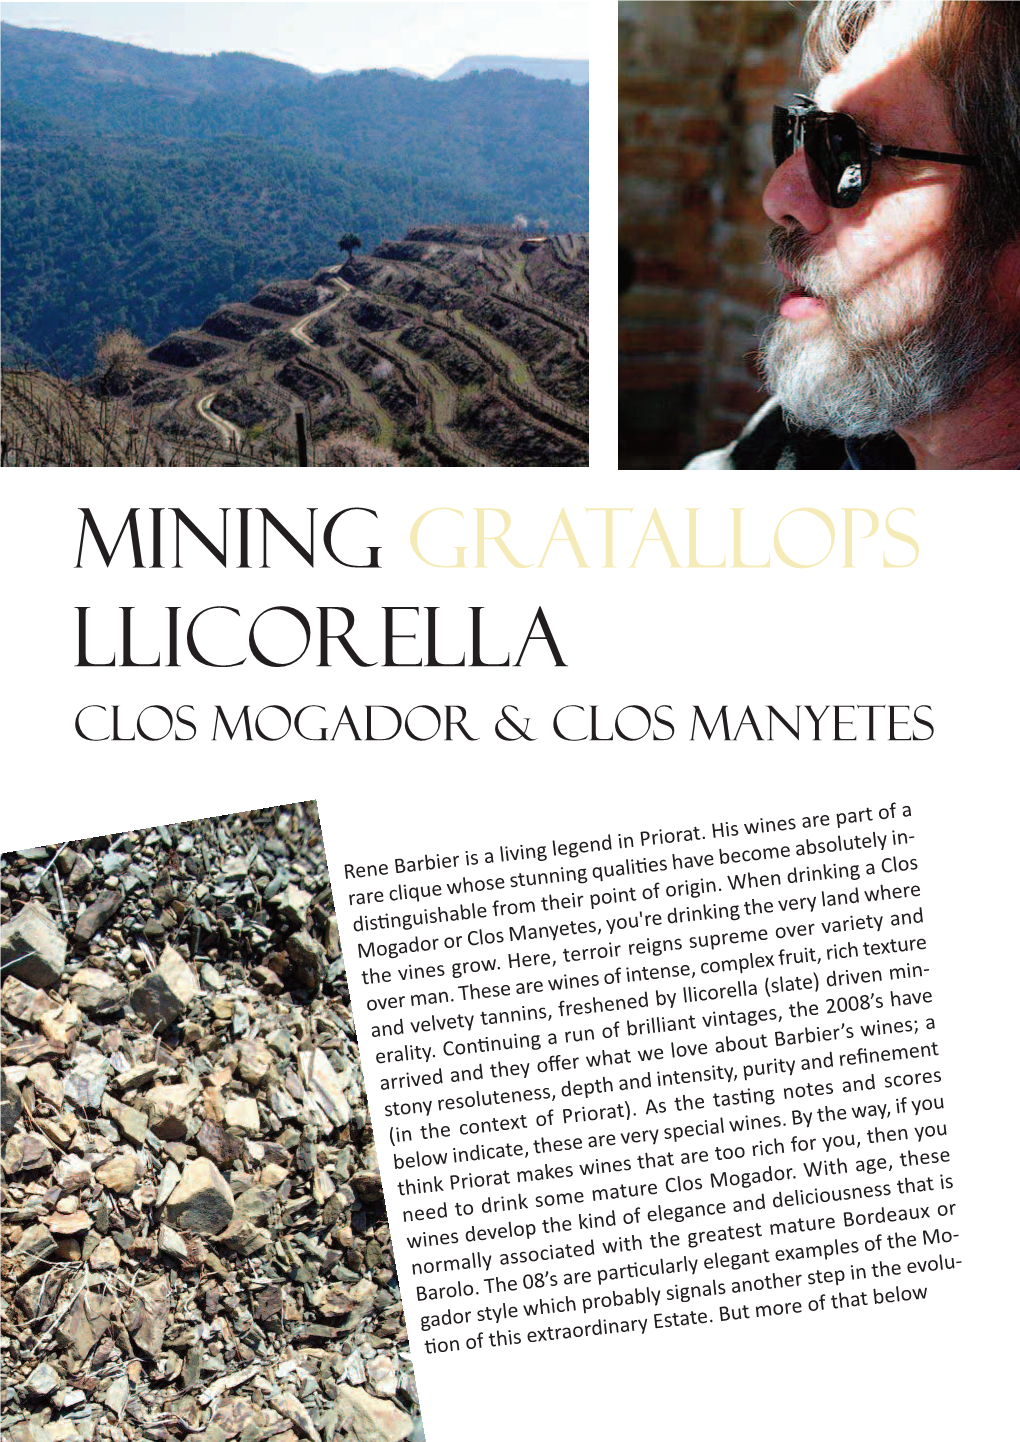 Mining Gratallops Llicorella Clos Mogador & Clos Manyetes